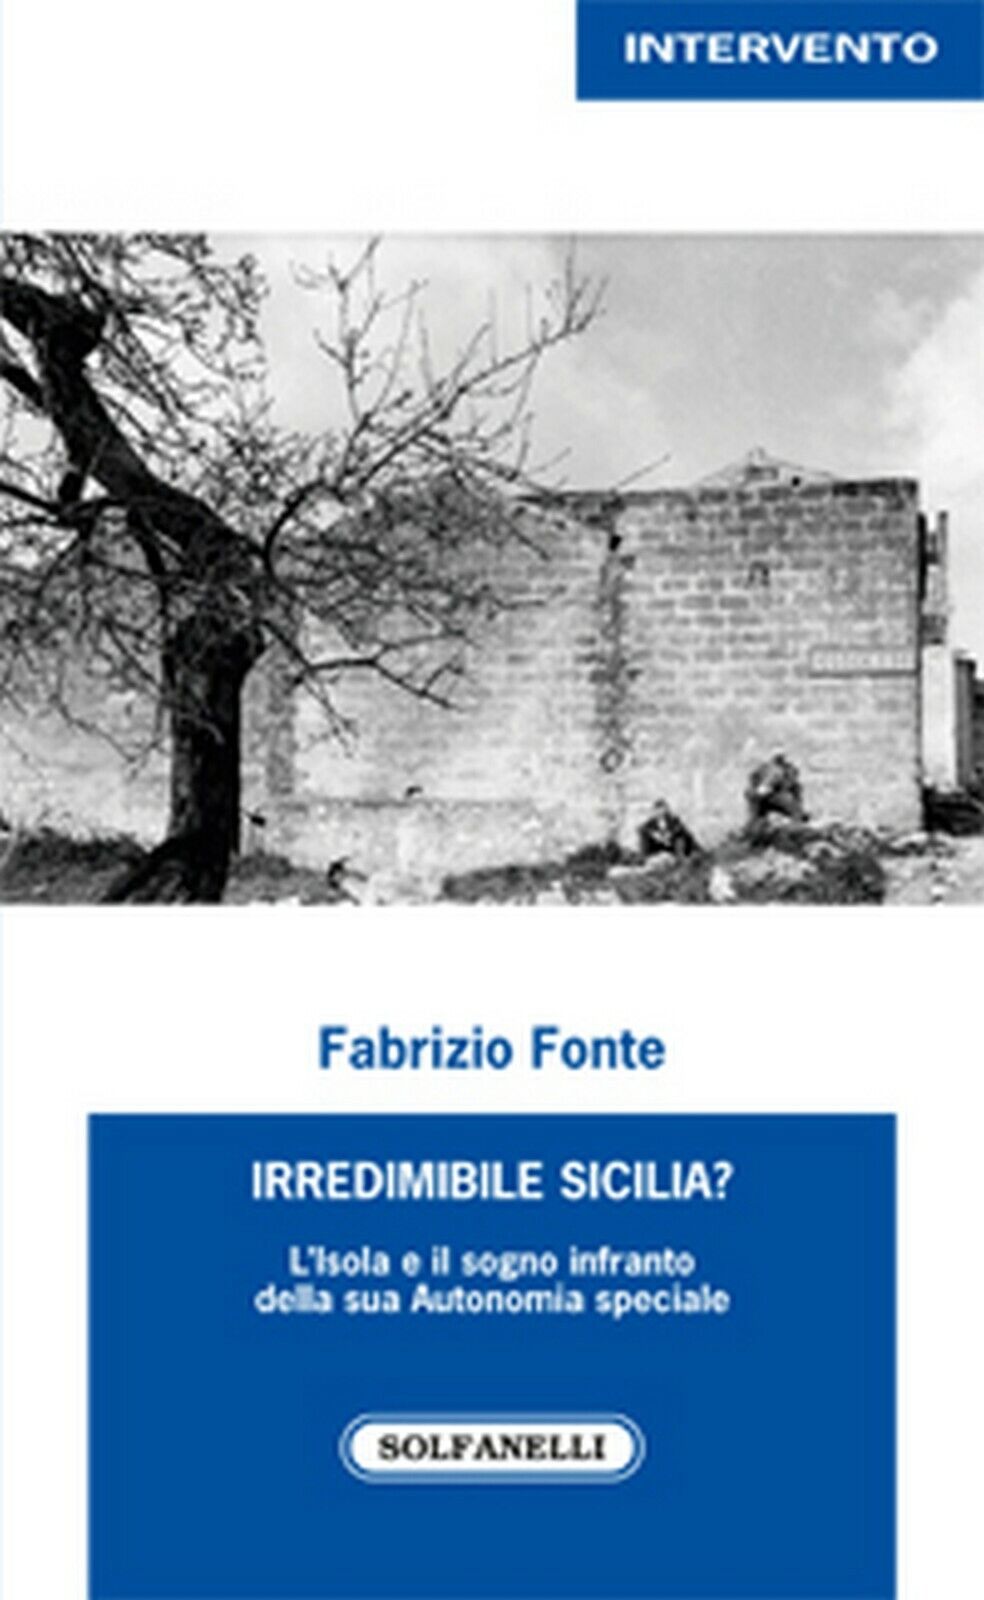 IRREDIMIBILE SICILIA?  di Fabrizio Fonte,  Solfanelli Edizioni